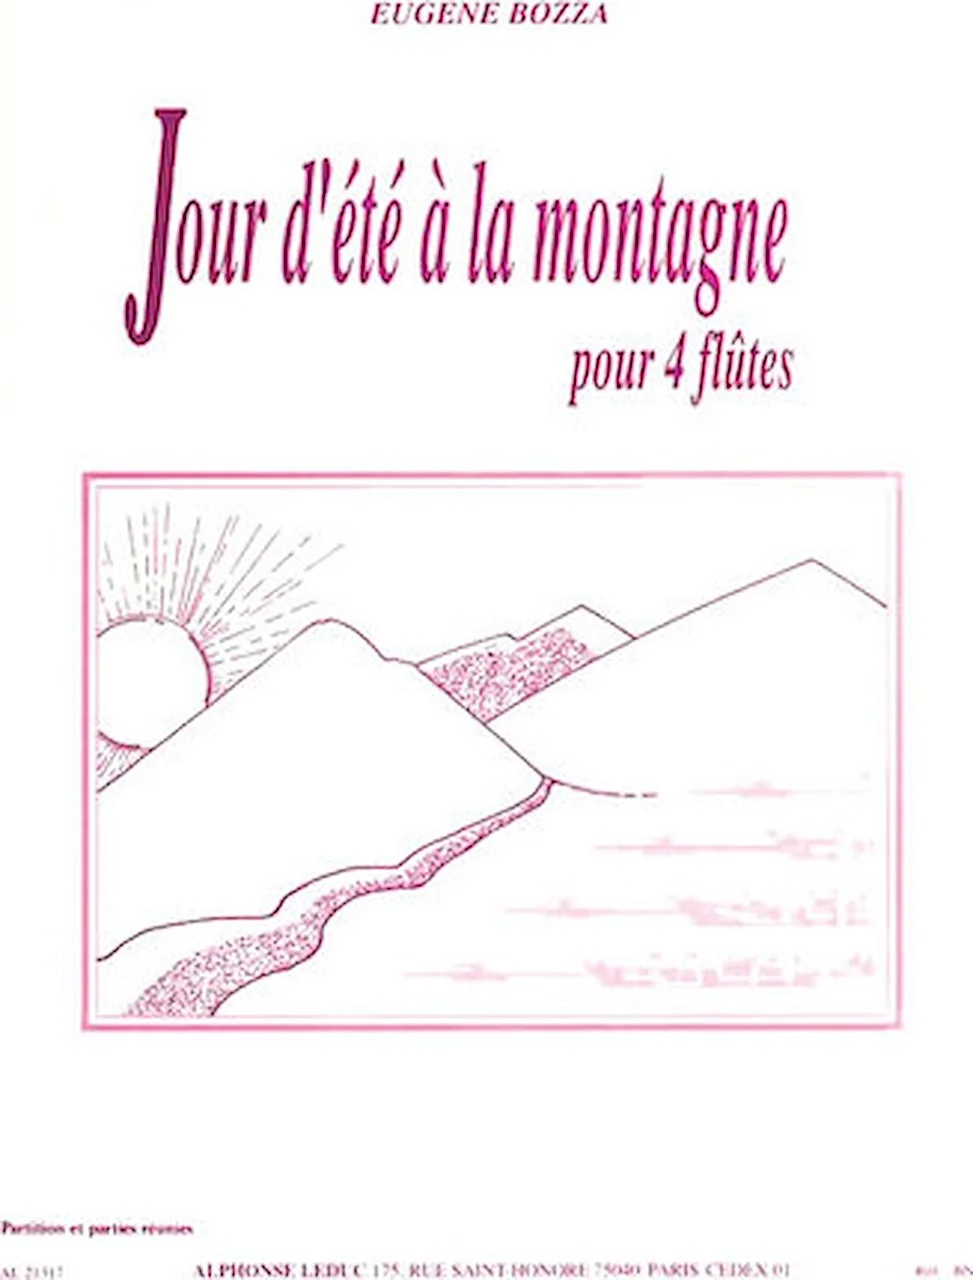 Eugene Bozza - Jour D ete A La Montagne, Pour Quatre Flutes - Picture 1 of 1